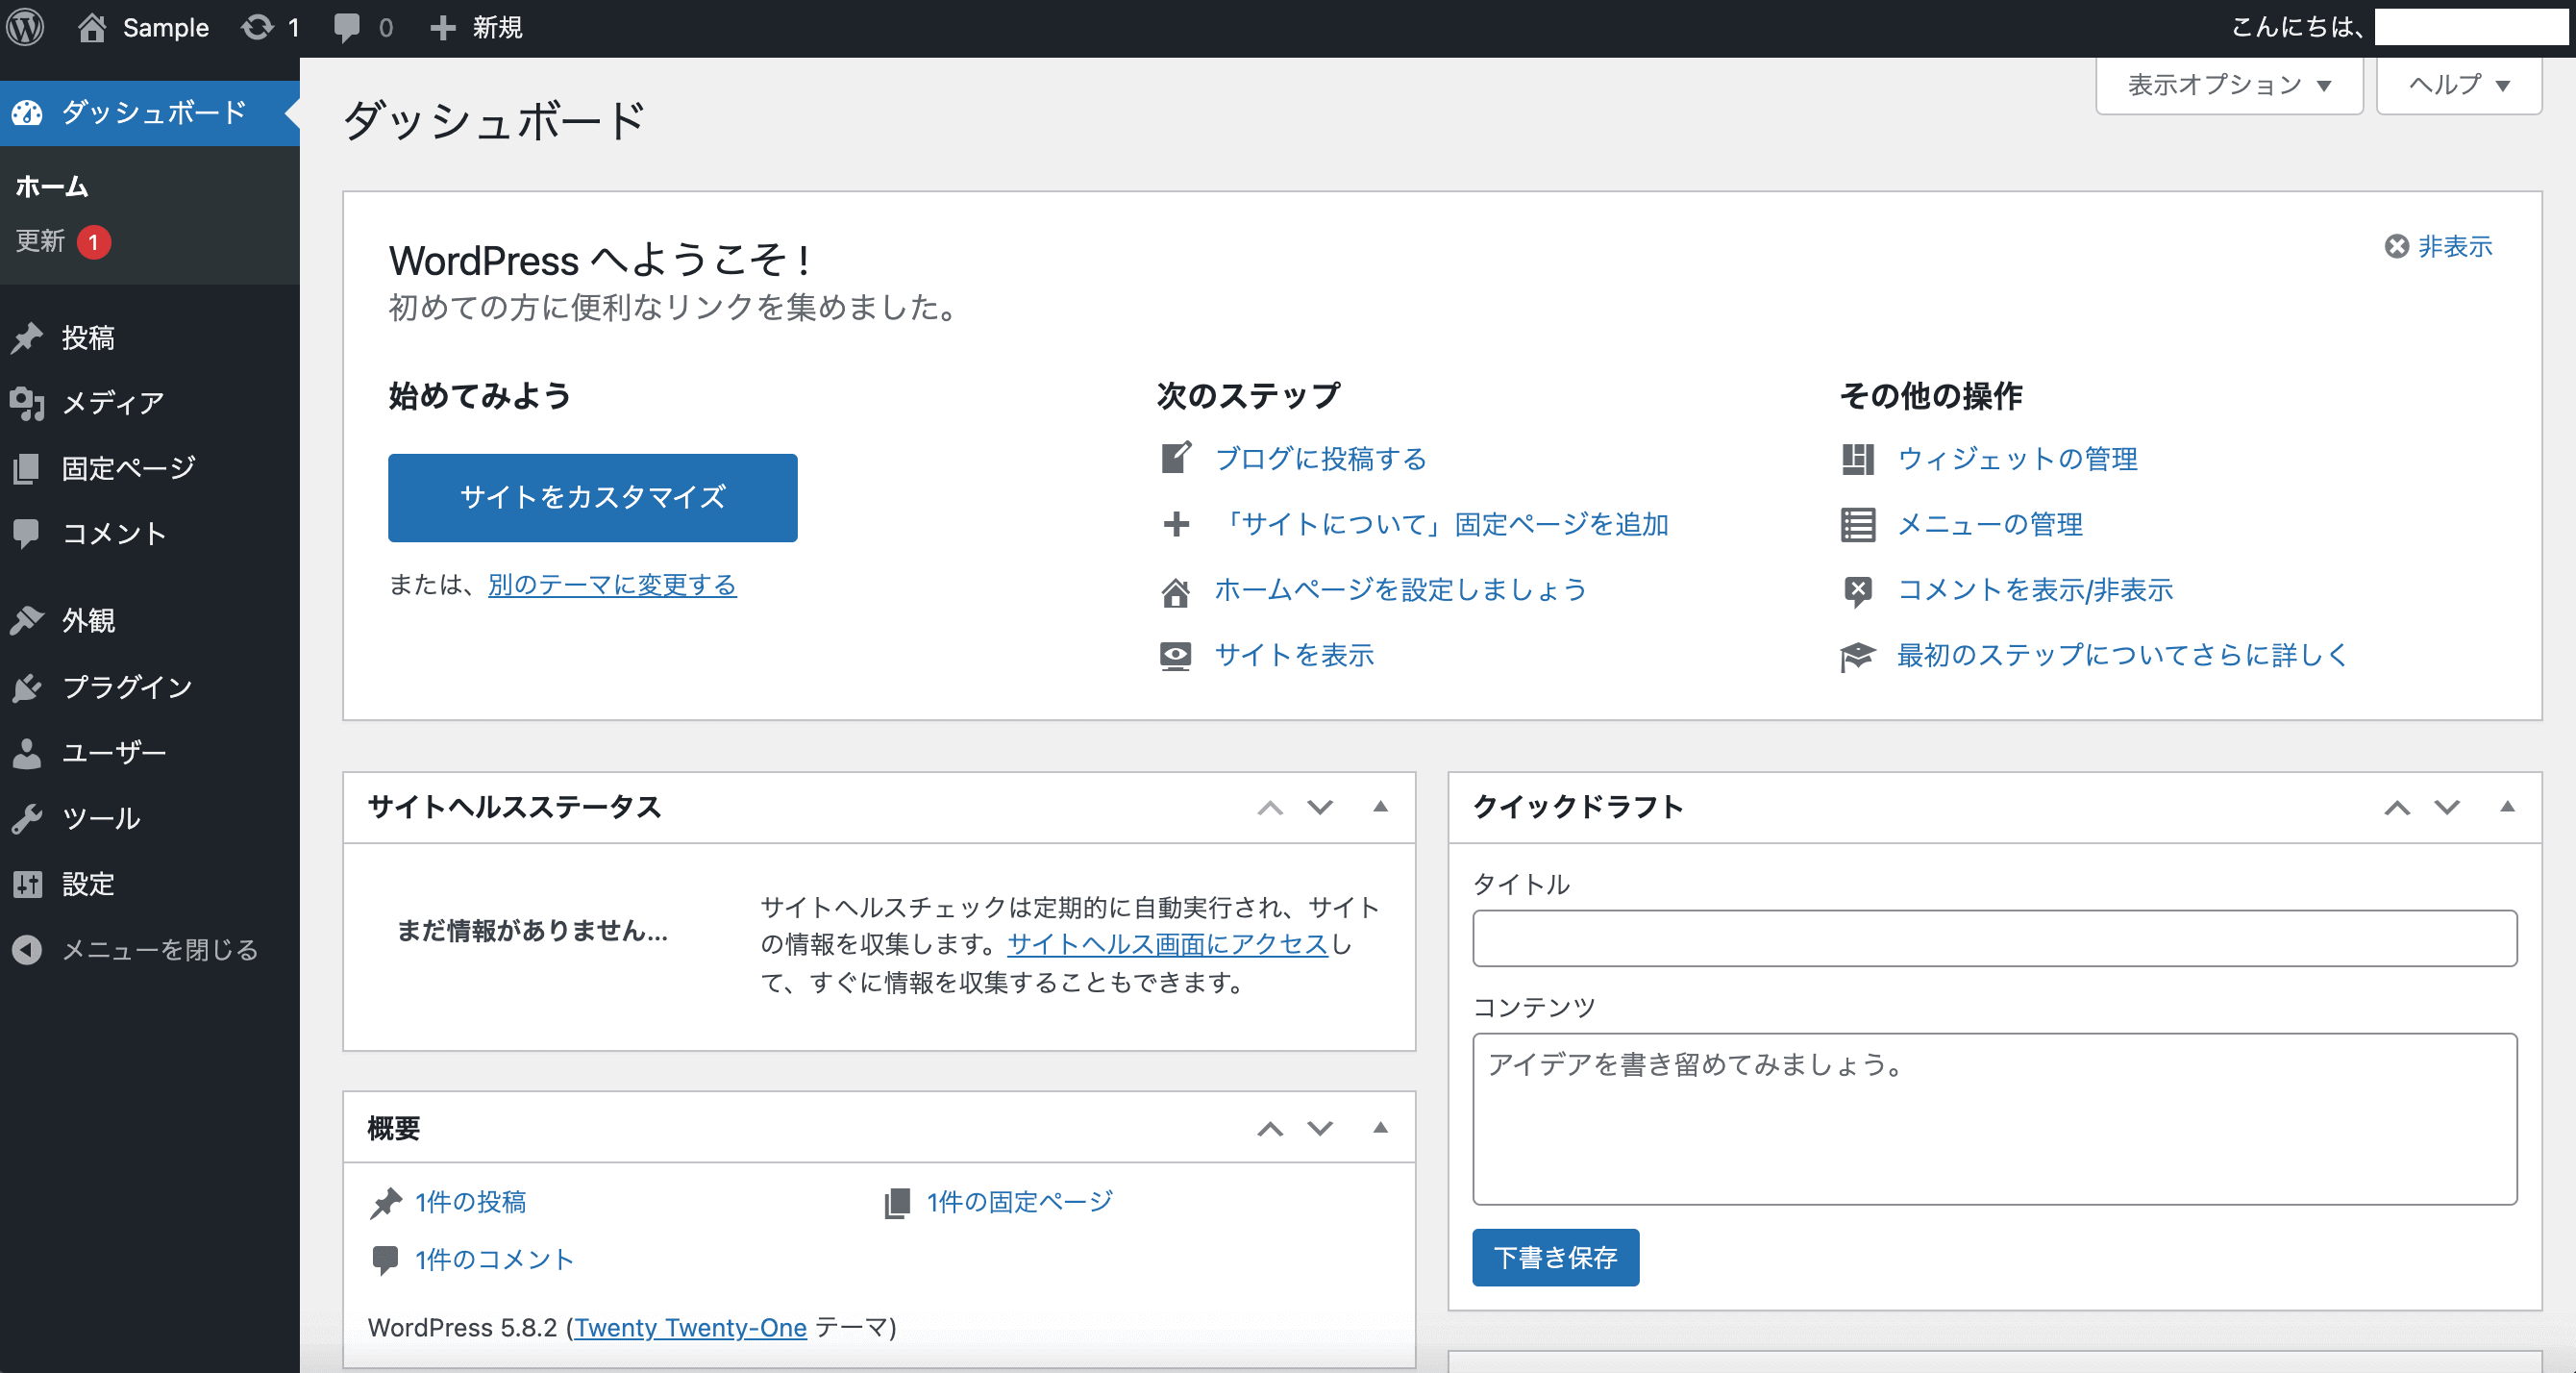 WordPress環境_言語設定_日本語に変更されていることを確認